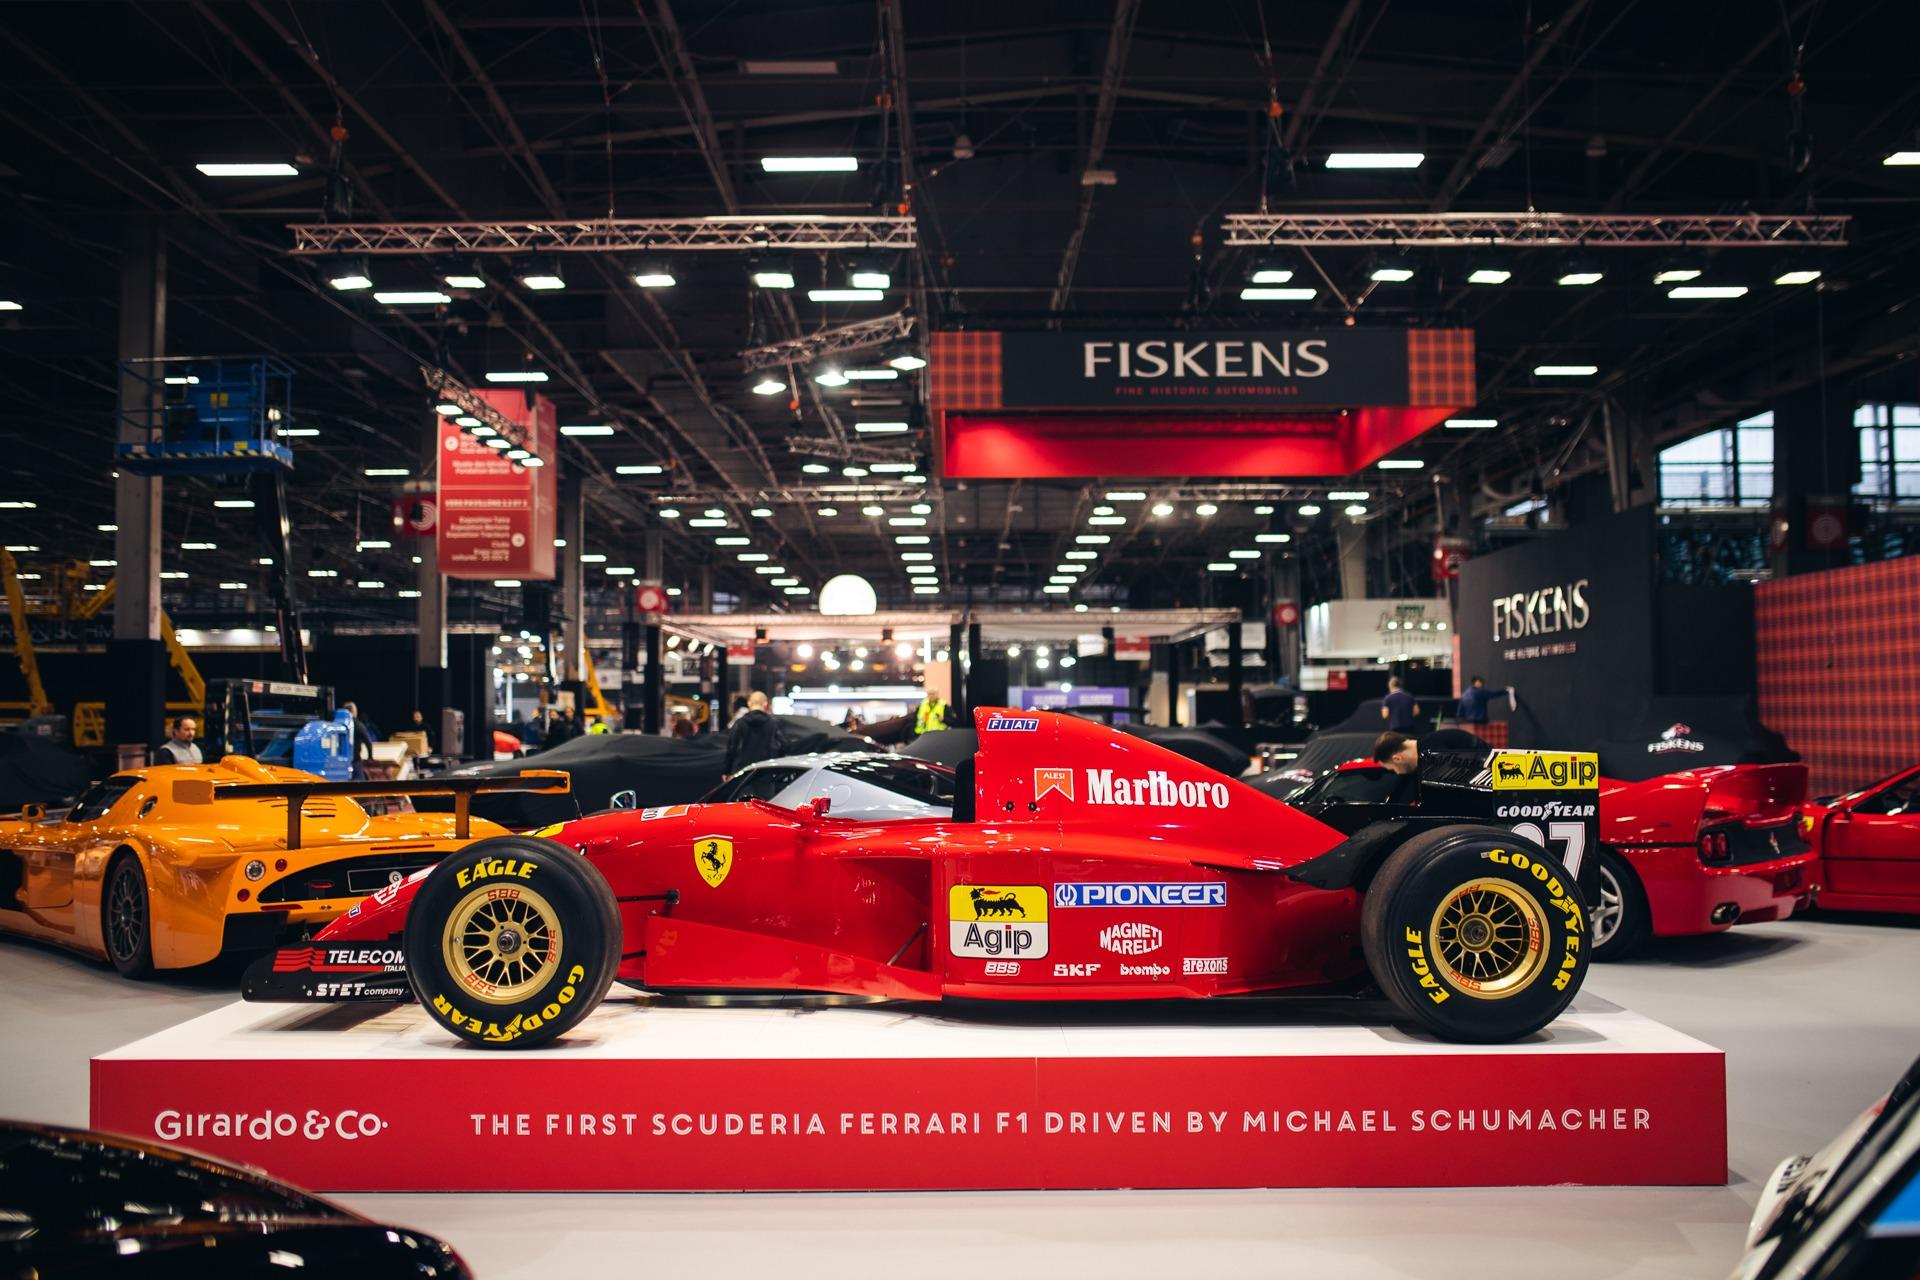 First Formula 1 Ferrari driven by Michael Schumacher up for sale